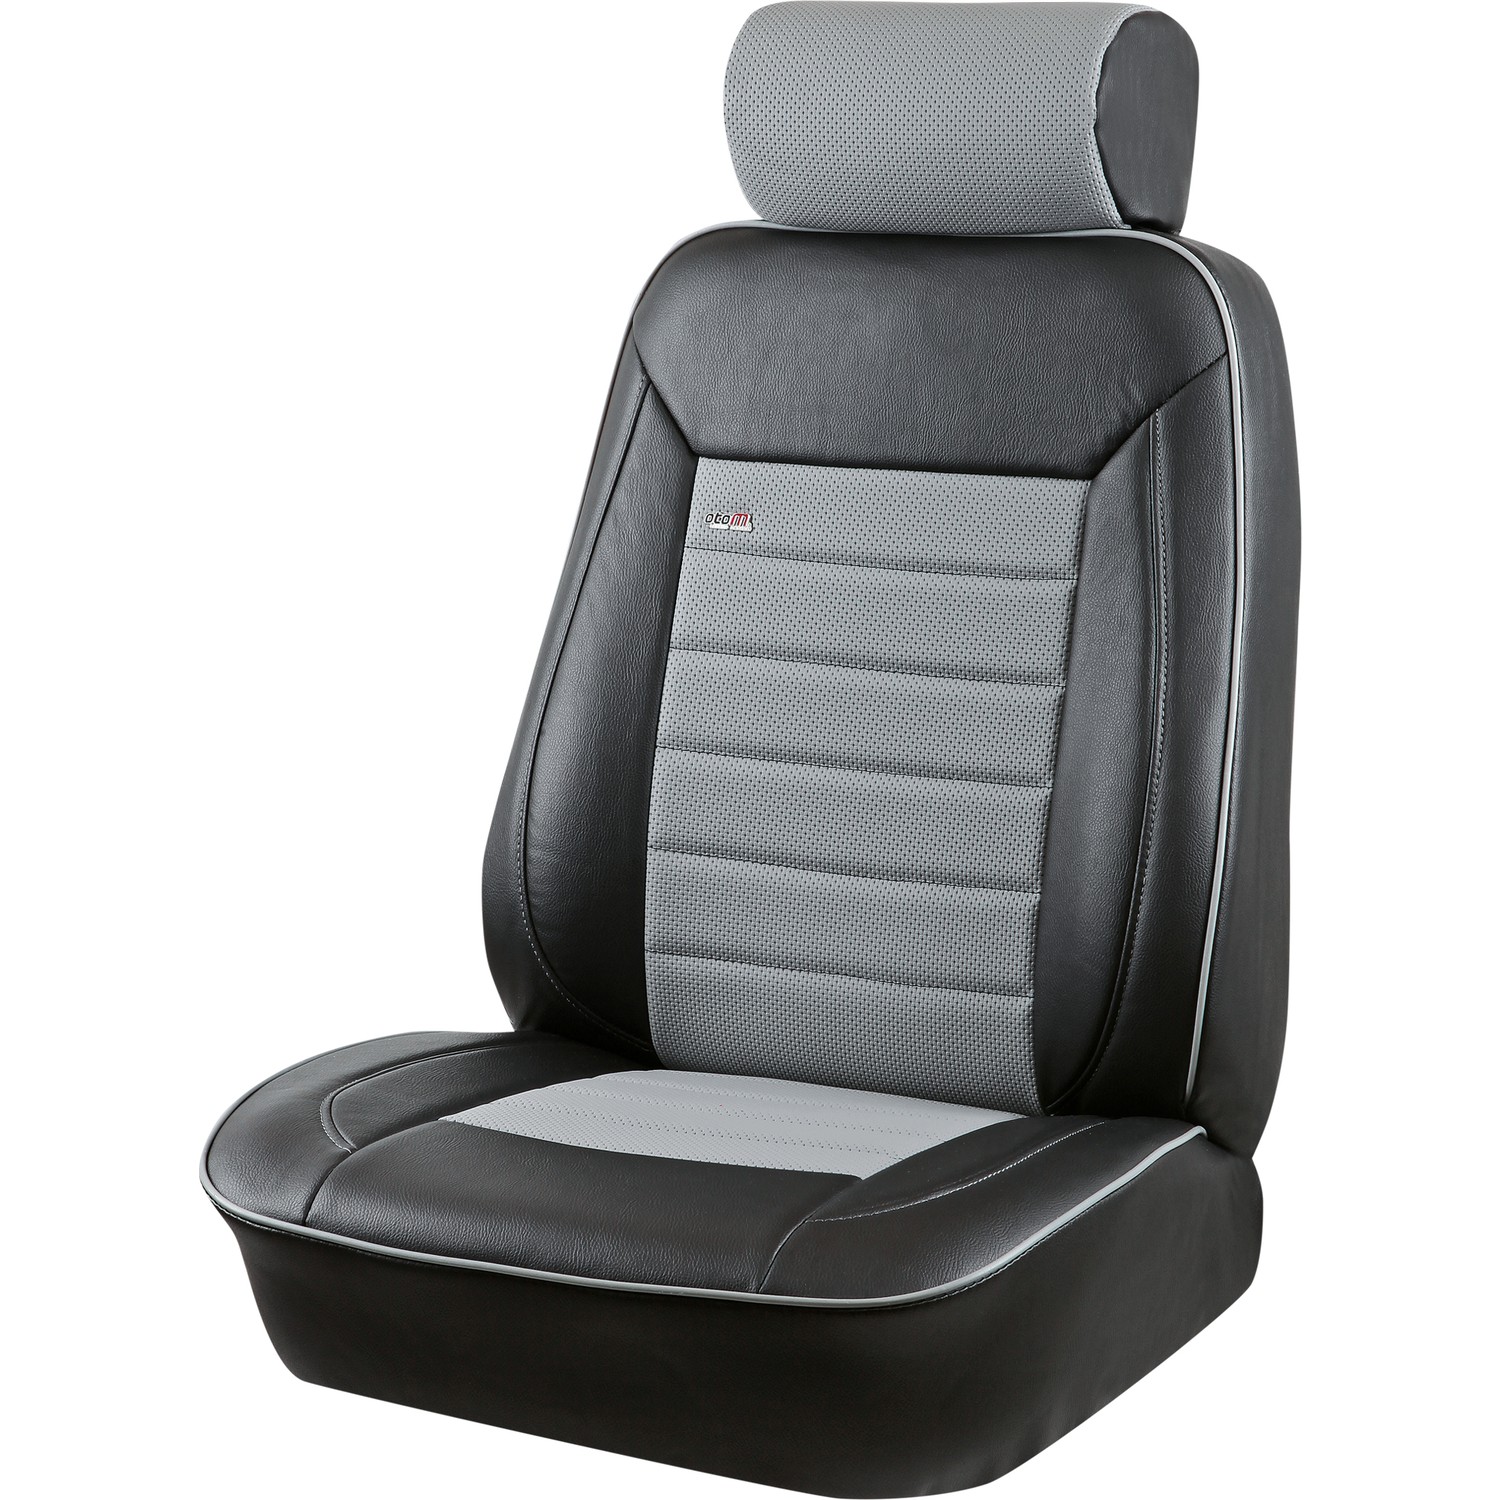 Otom Premium Standart Oto Koltuk Kılıfı Prm1104 Fiyatı